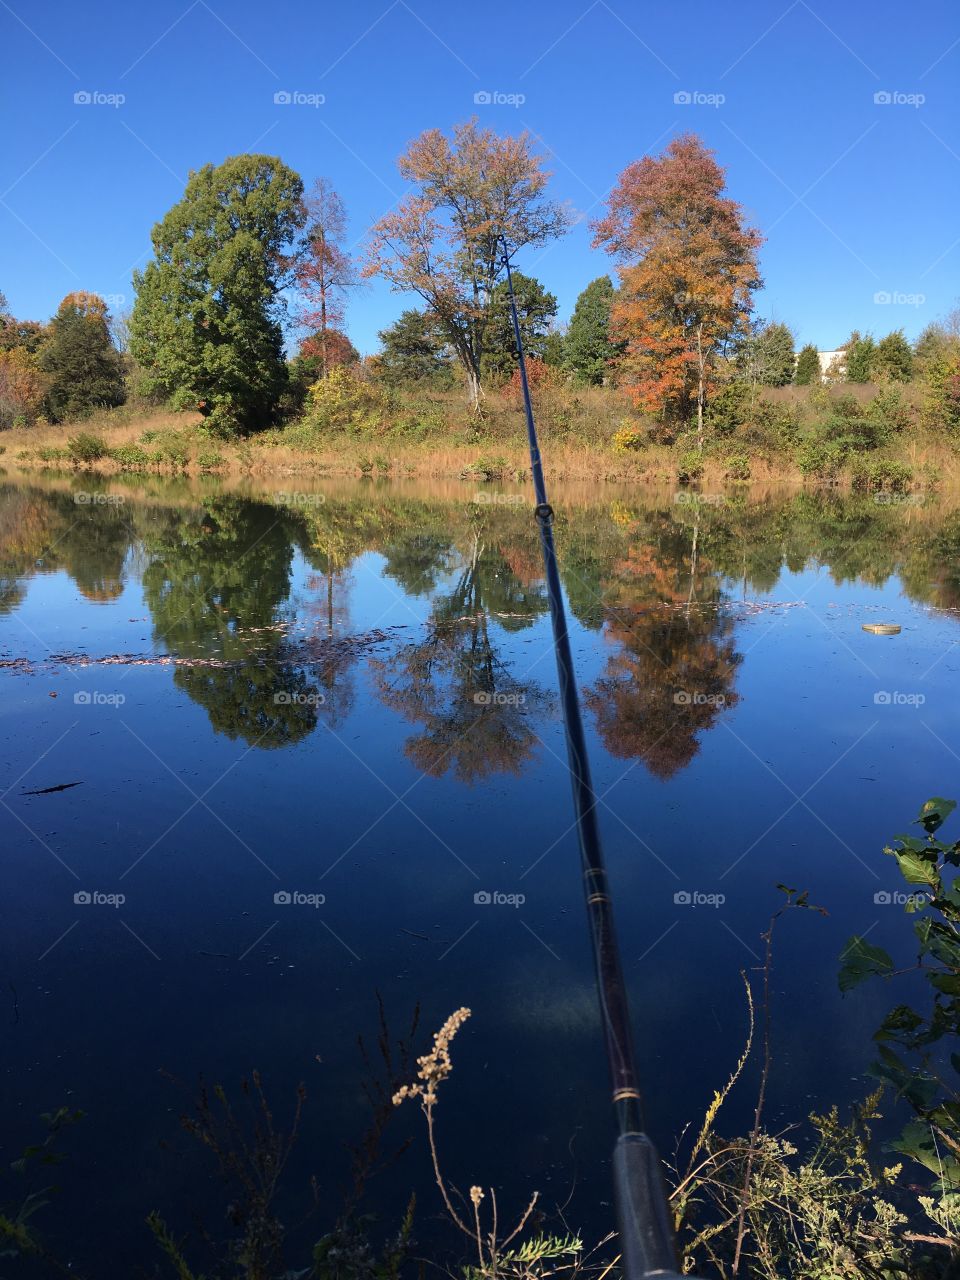 Fall pond fishing